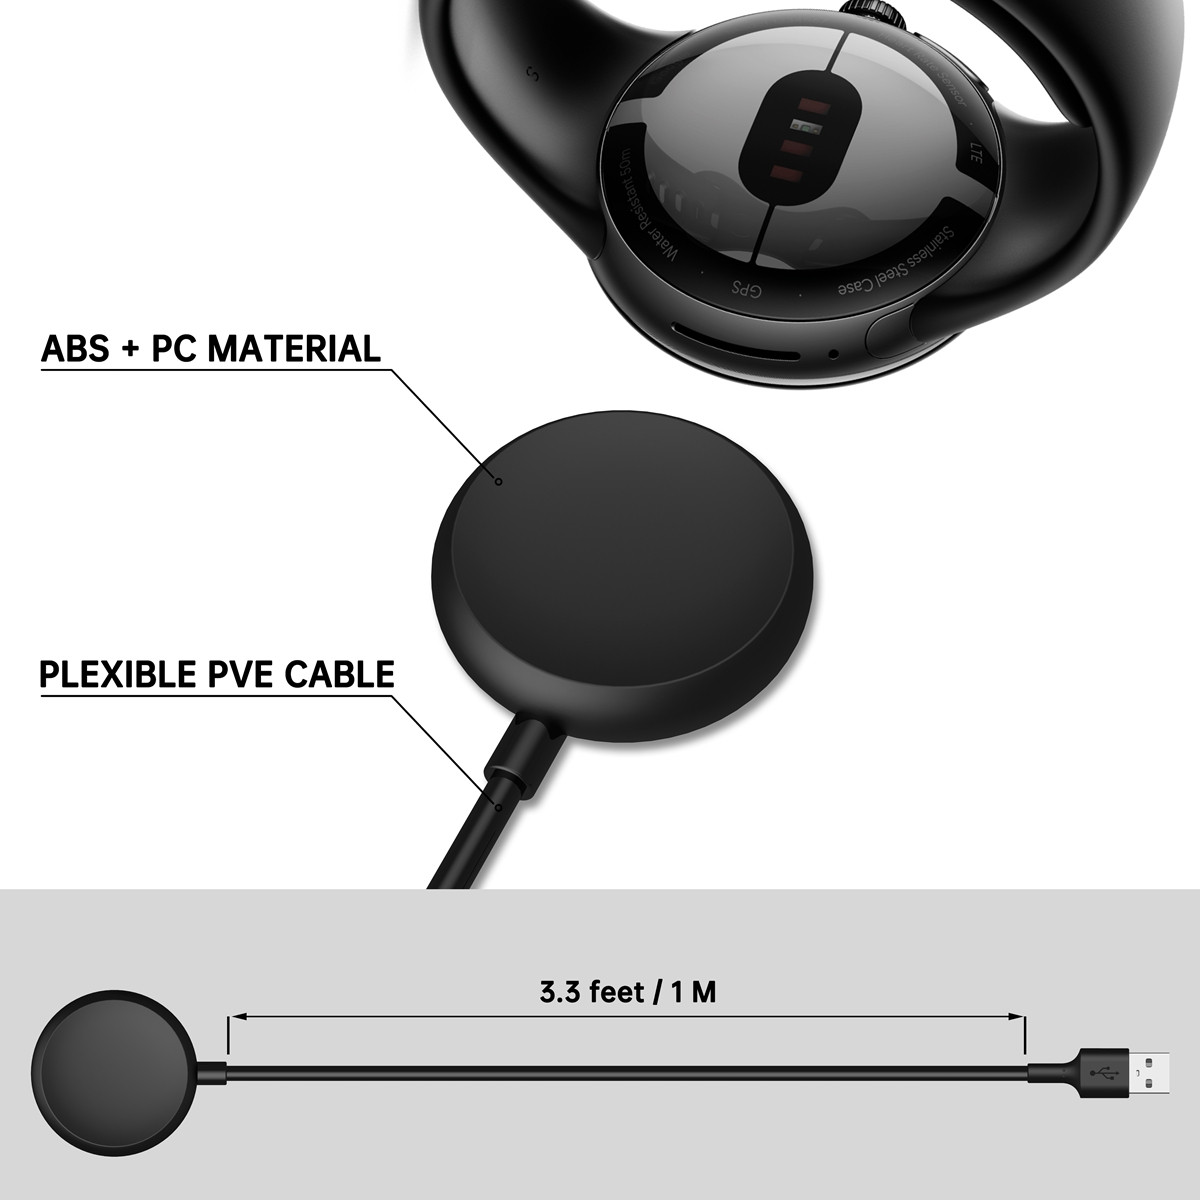 WIGENTO USB Port Smart Schwarz 1 Watch Cable, 2, + Pixel 1 Watch Google, Charging Ladekabel, Google Meter